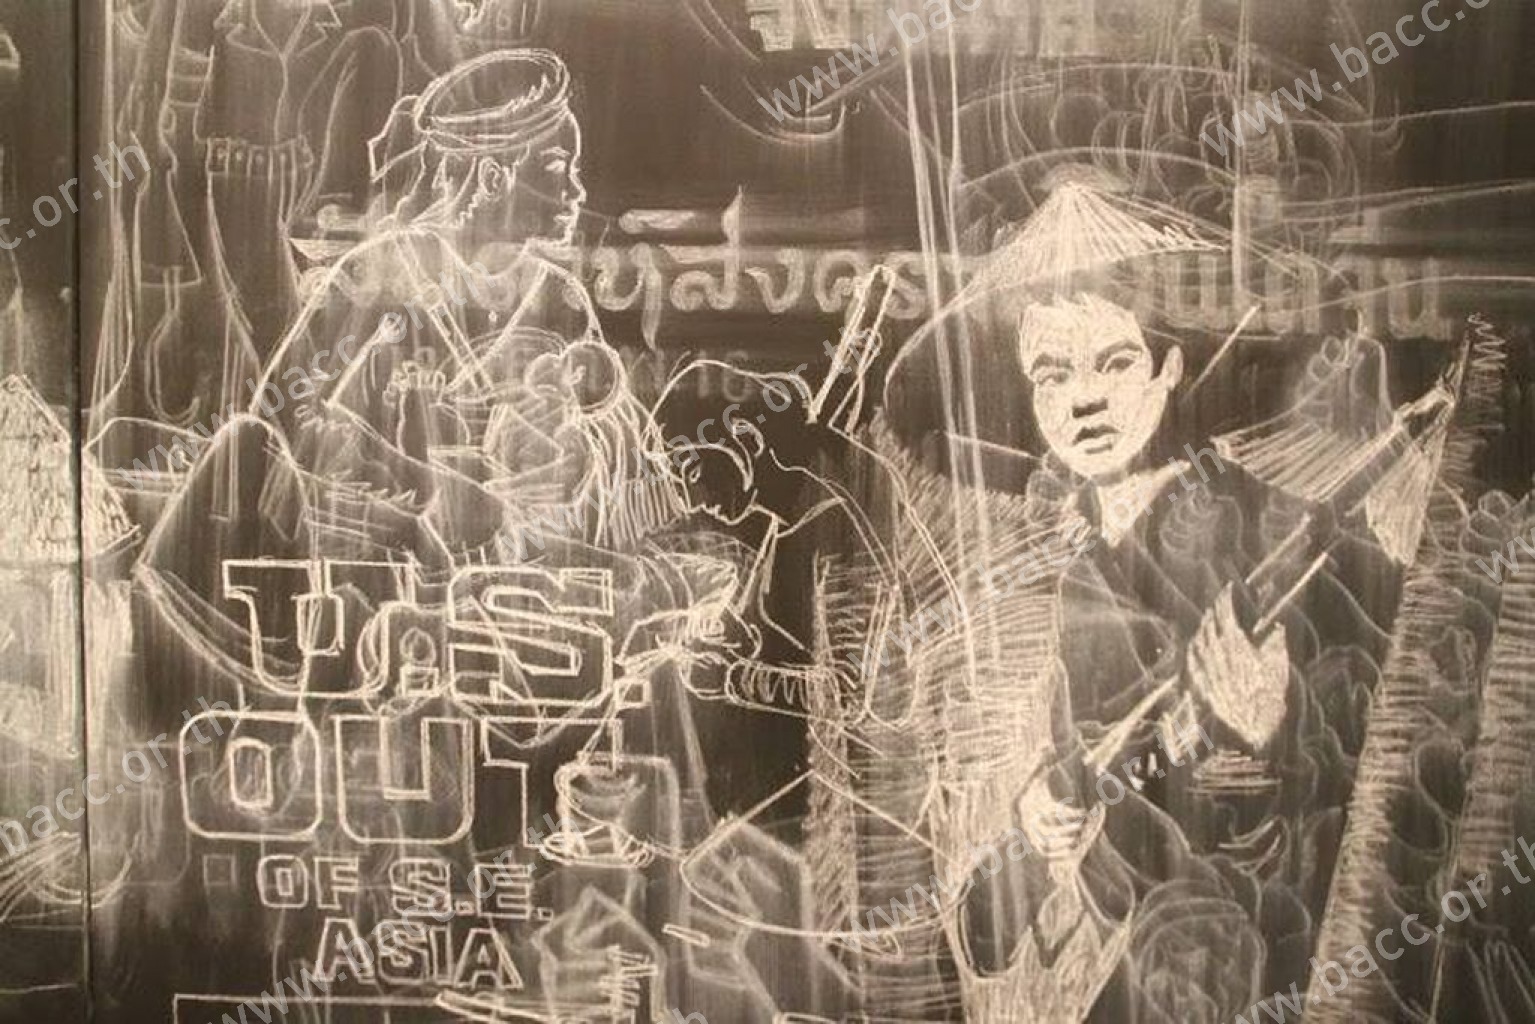 นิทรรศการ มโนทัศน์ บริบท และการต่อต้าน: ศิลปะและส่วนรวมในเอเชียตะวันออกเฉียงใต้ (กรุงฮานอย)